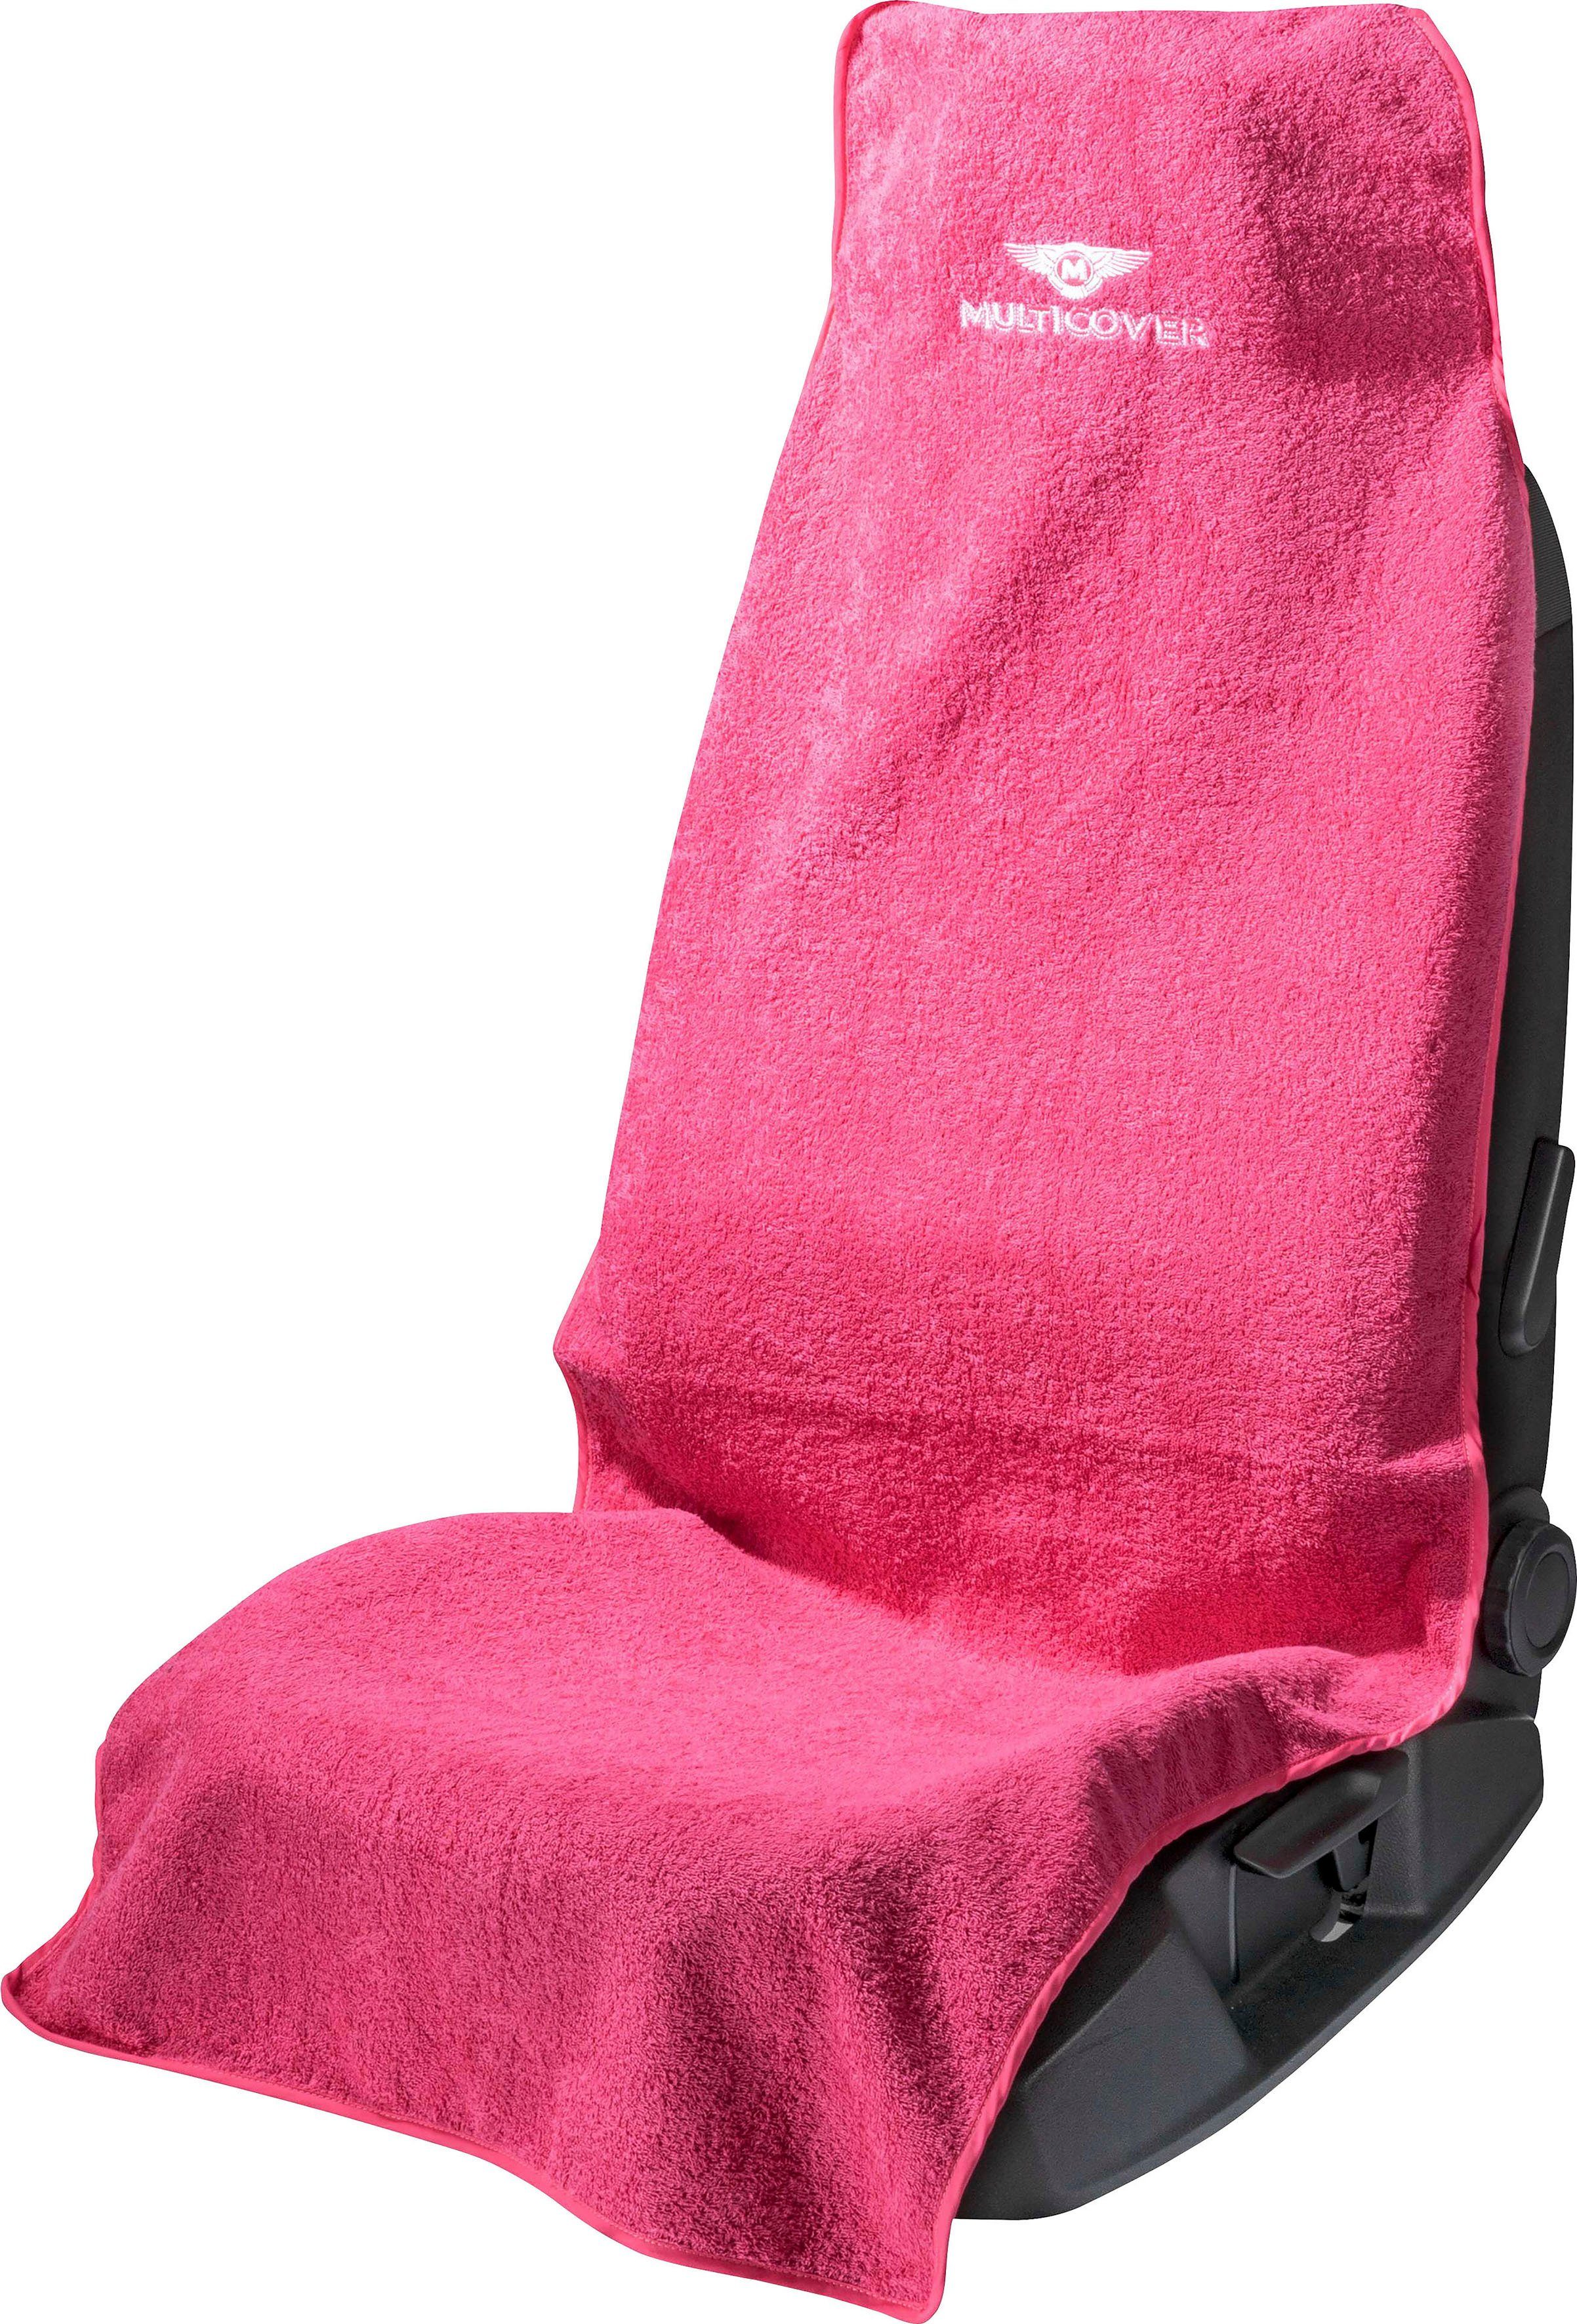 WALSER Autositzbezug Multicover pink | Autositzbezüge